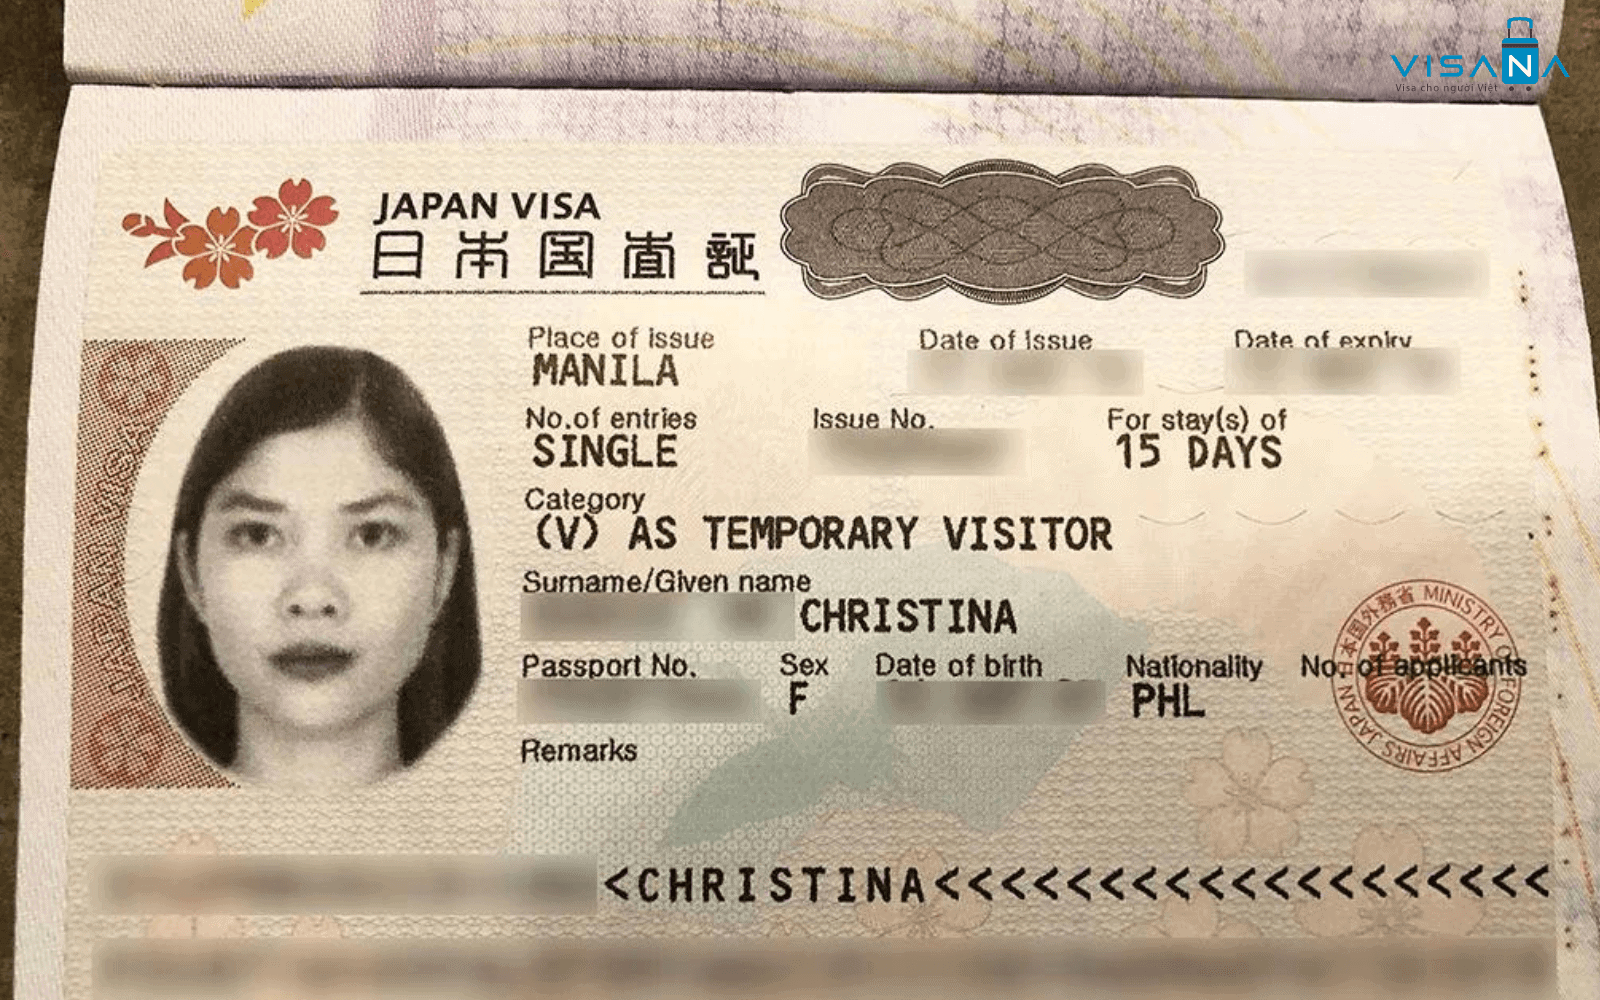 visa du lịch nhật bản là gì visana